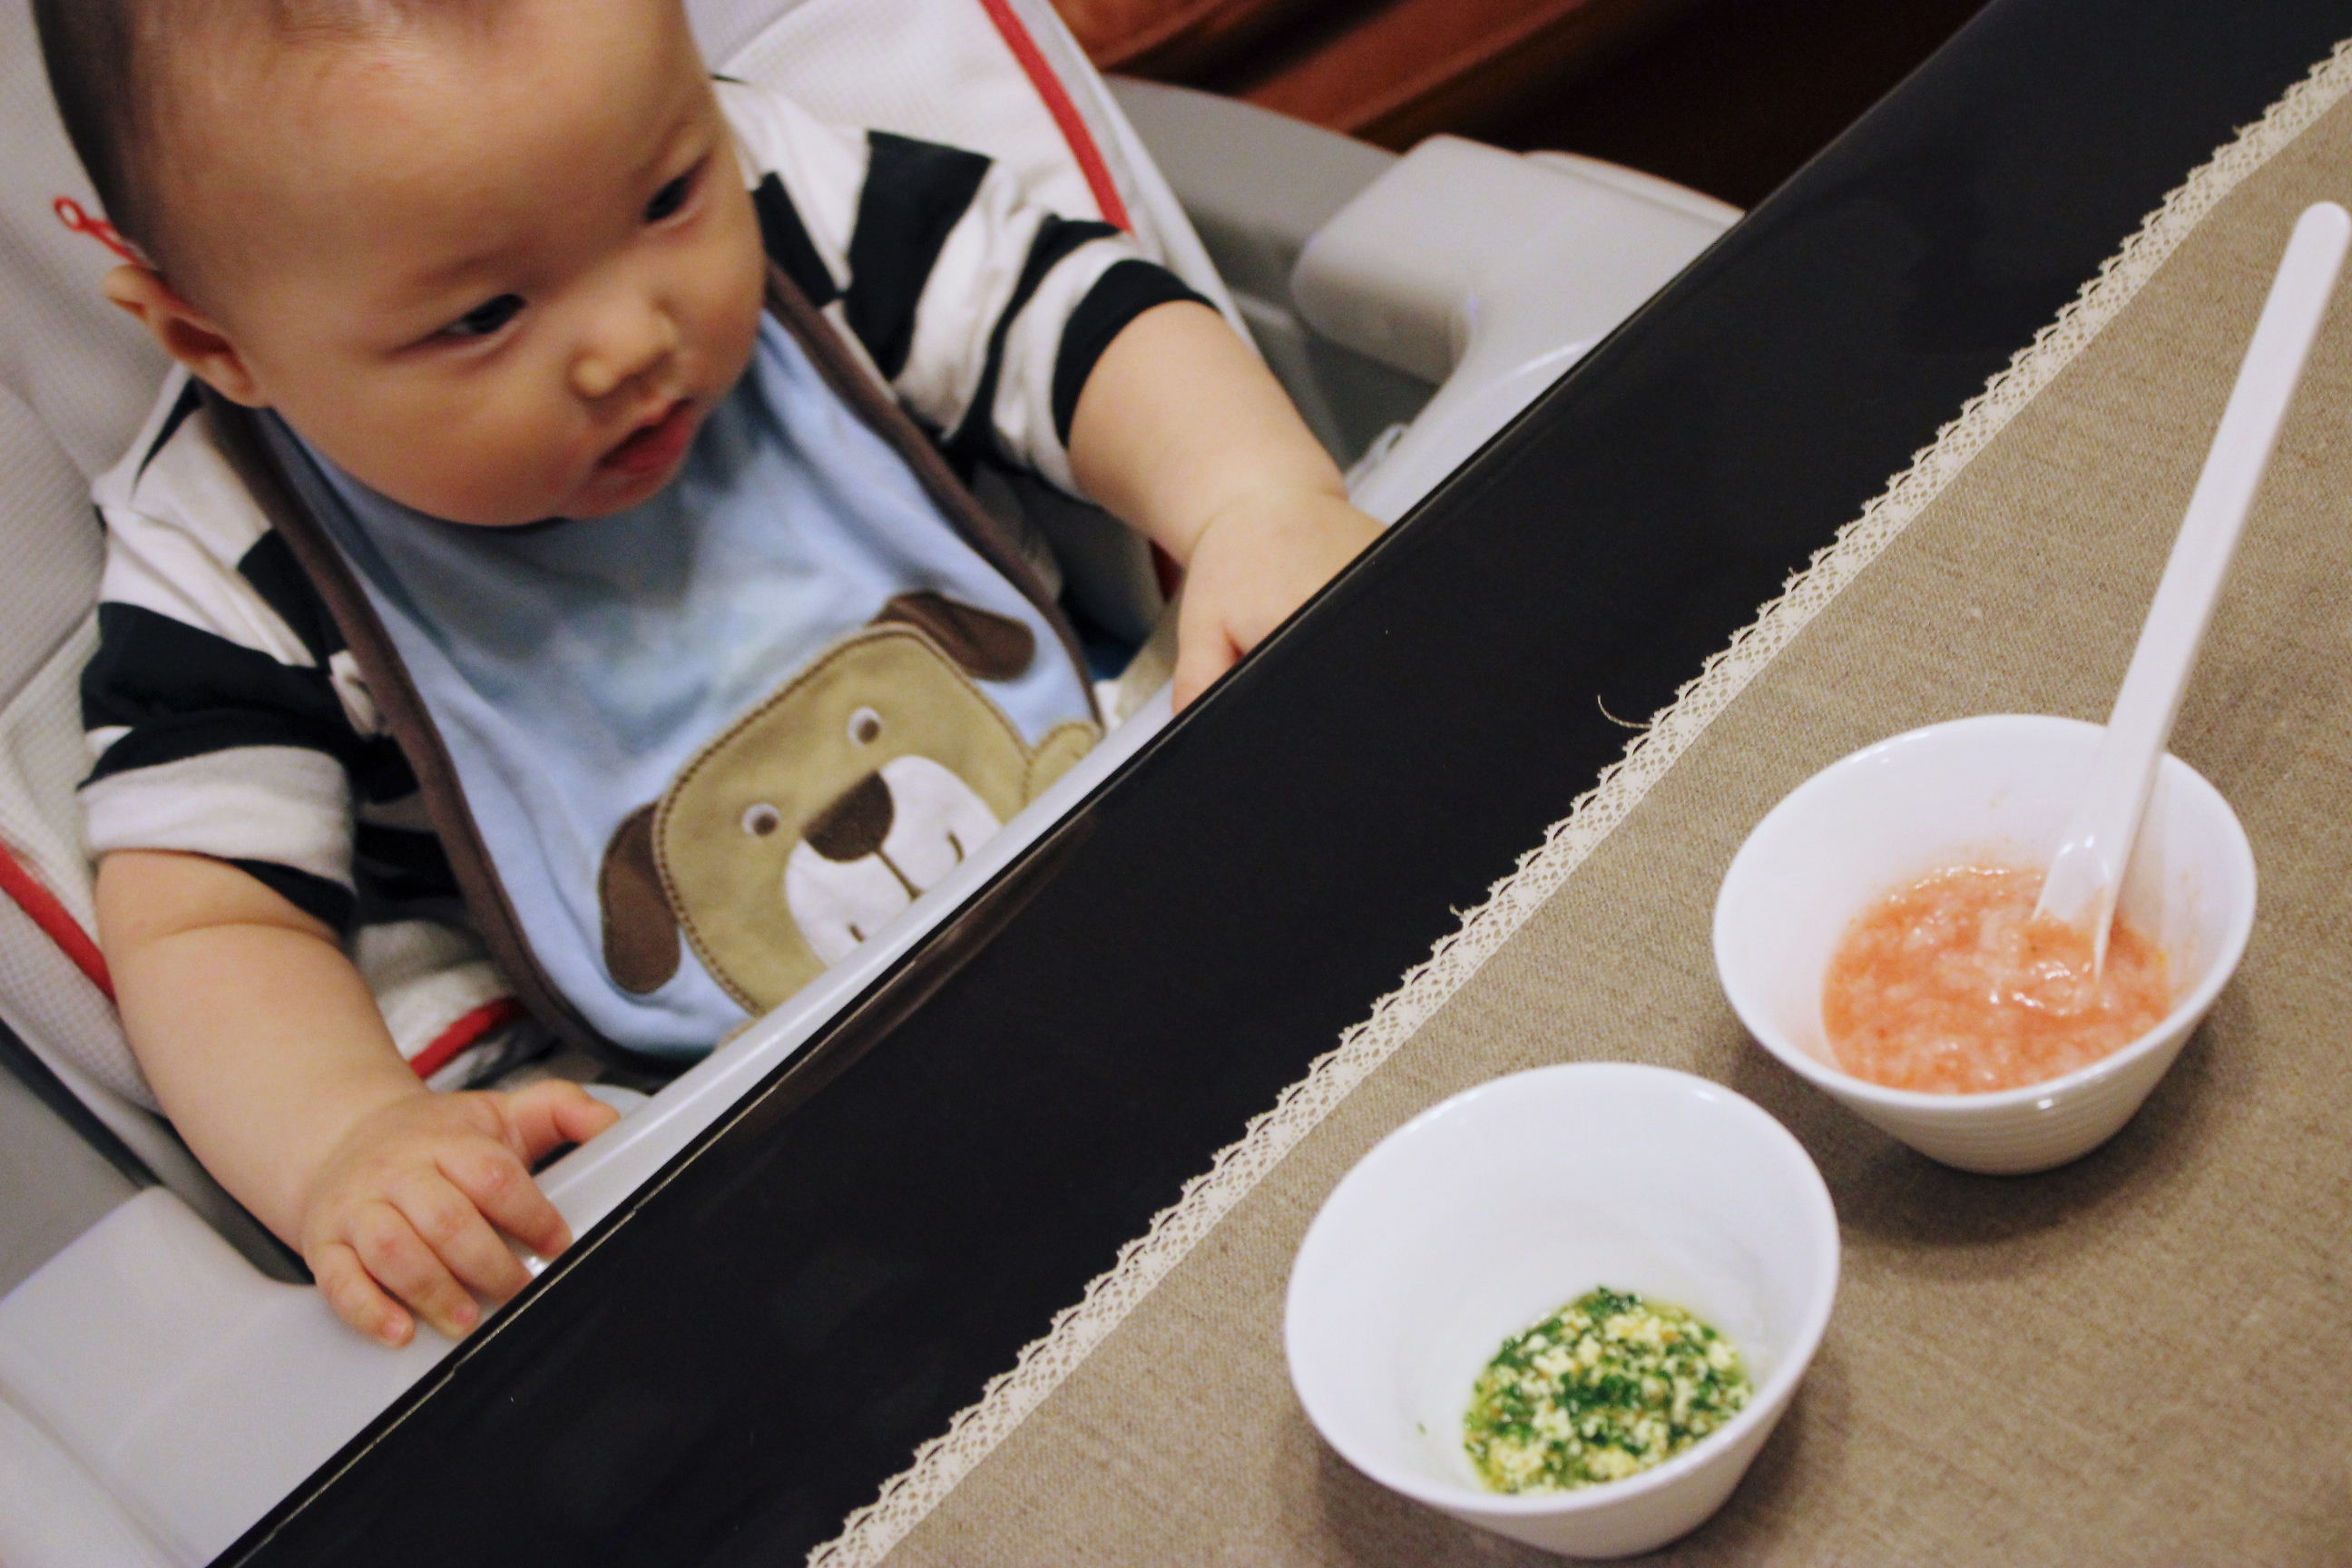 6ヶ月 今日の離乳食と授乳間隔 渋谷ol通信v2 只今育児ブログ更新中